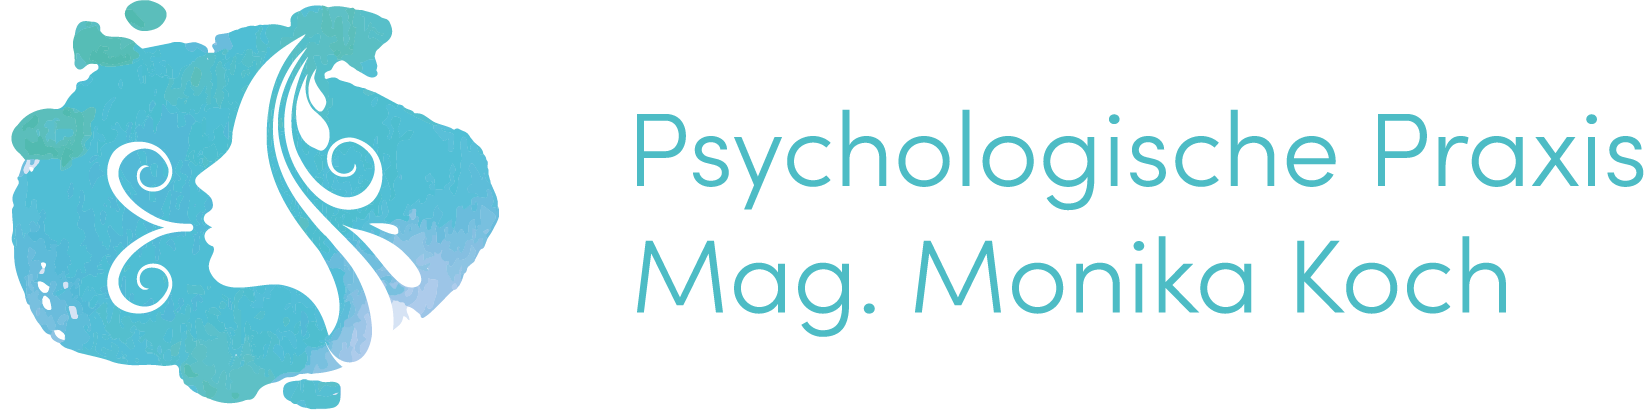 Logo von der Psychologischen Praxis Mag. Monika Koch